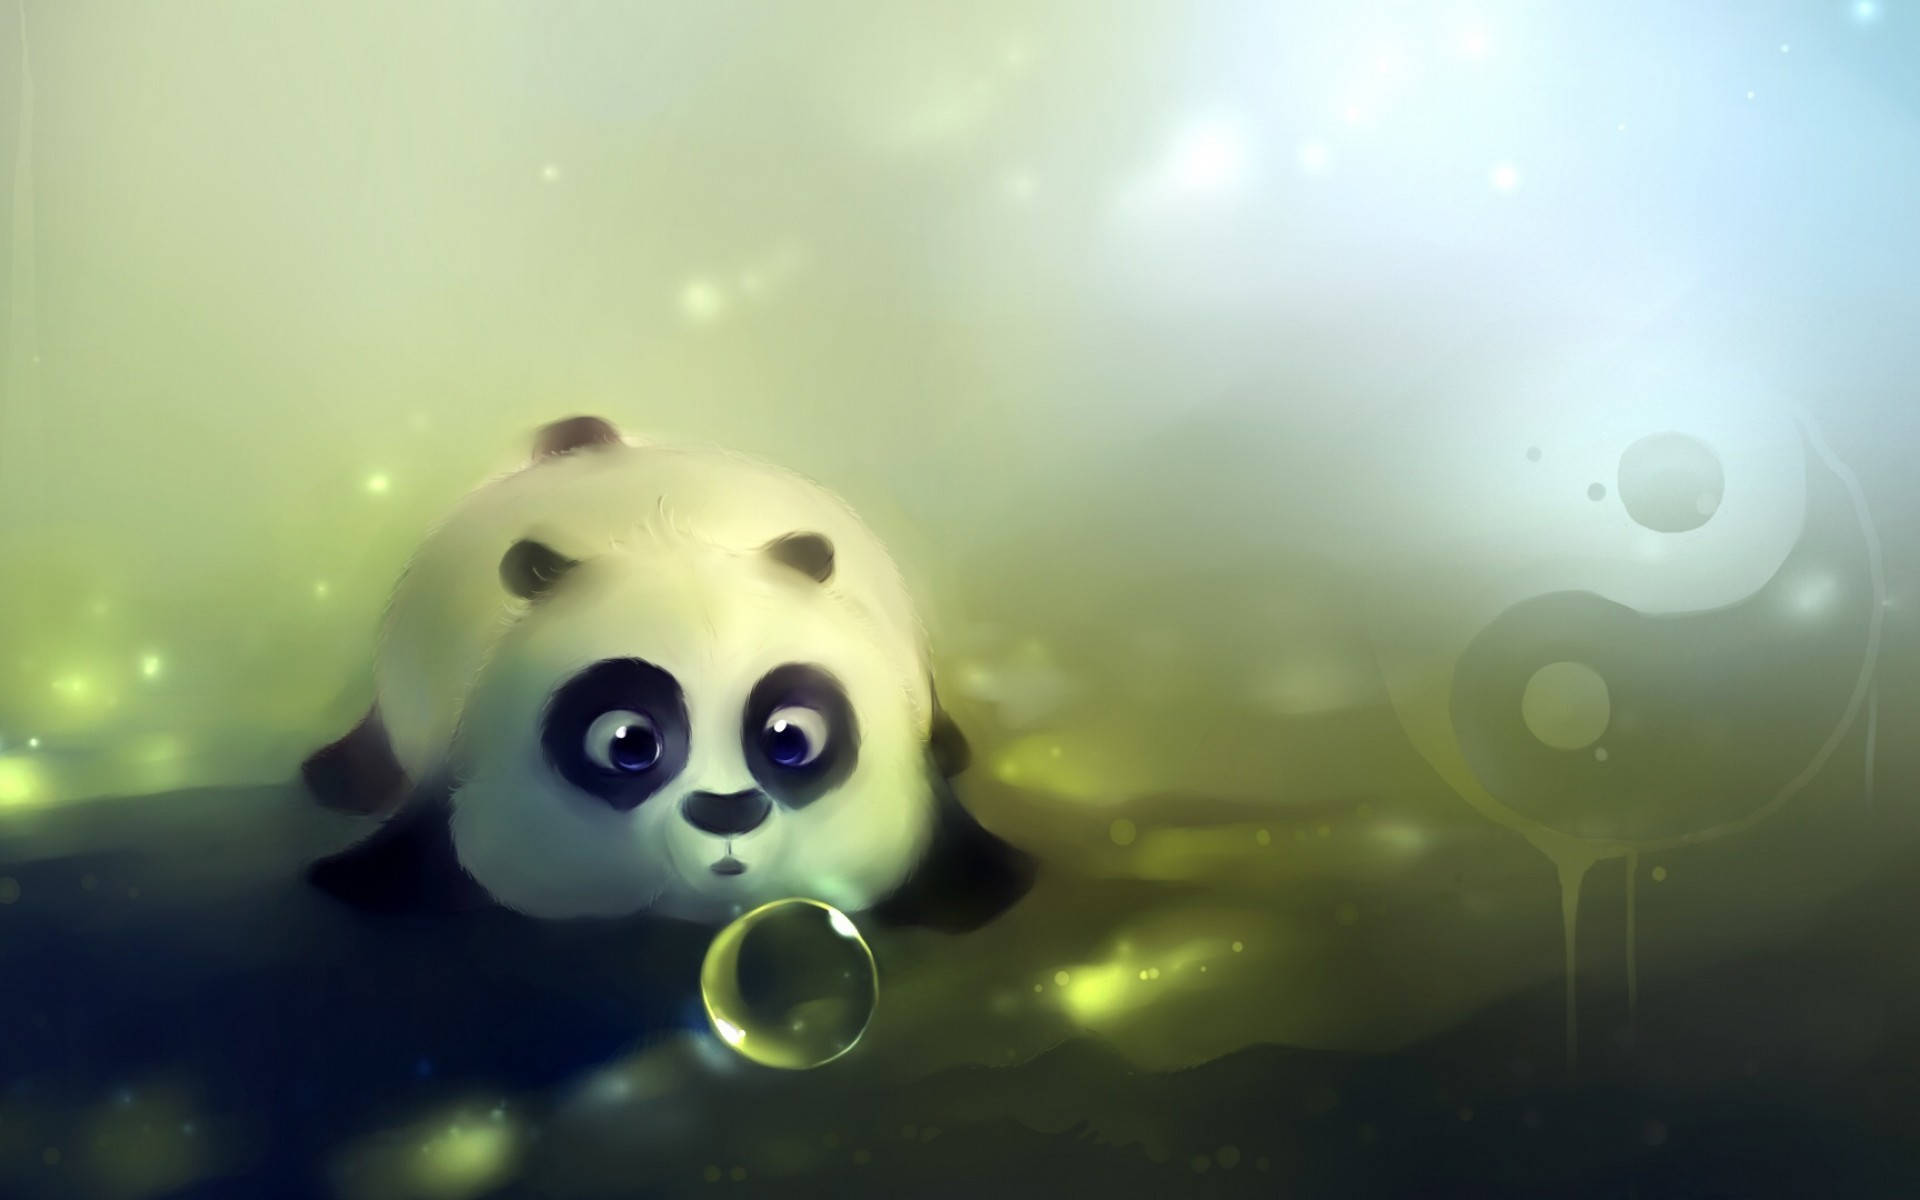 Cute Hd Image Of A Panda Wallpaper